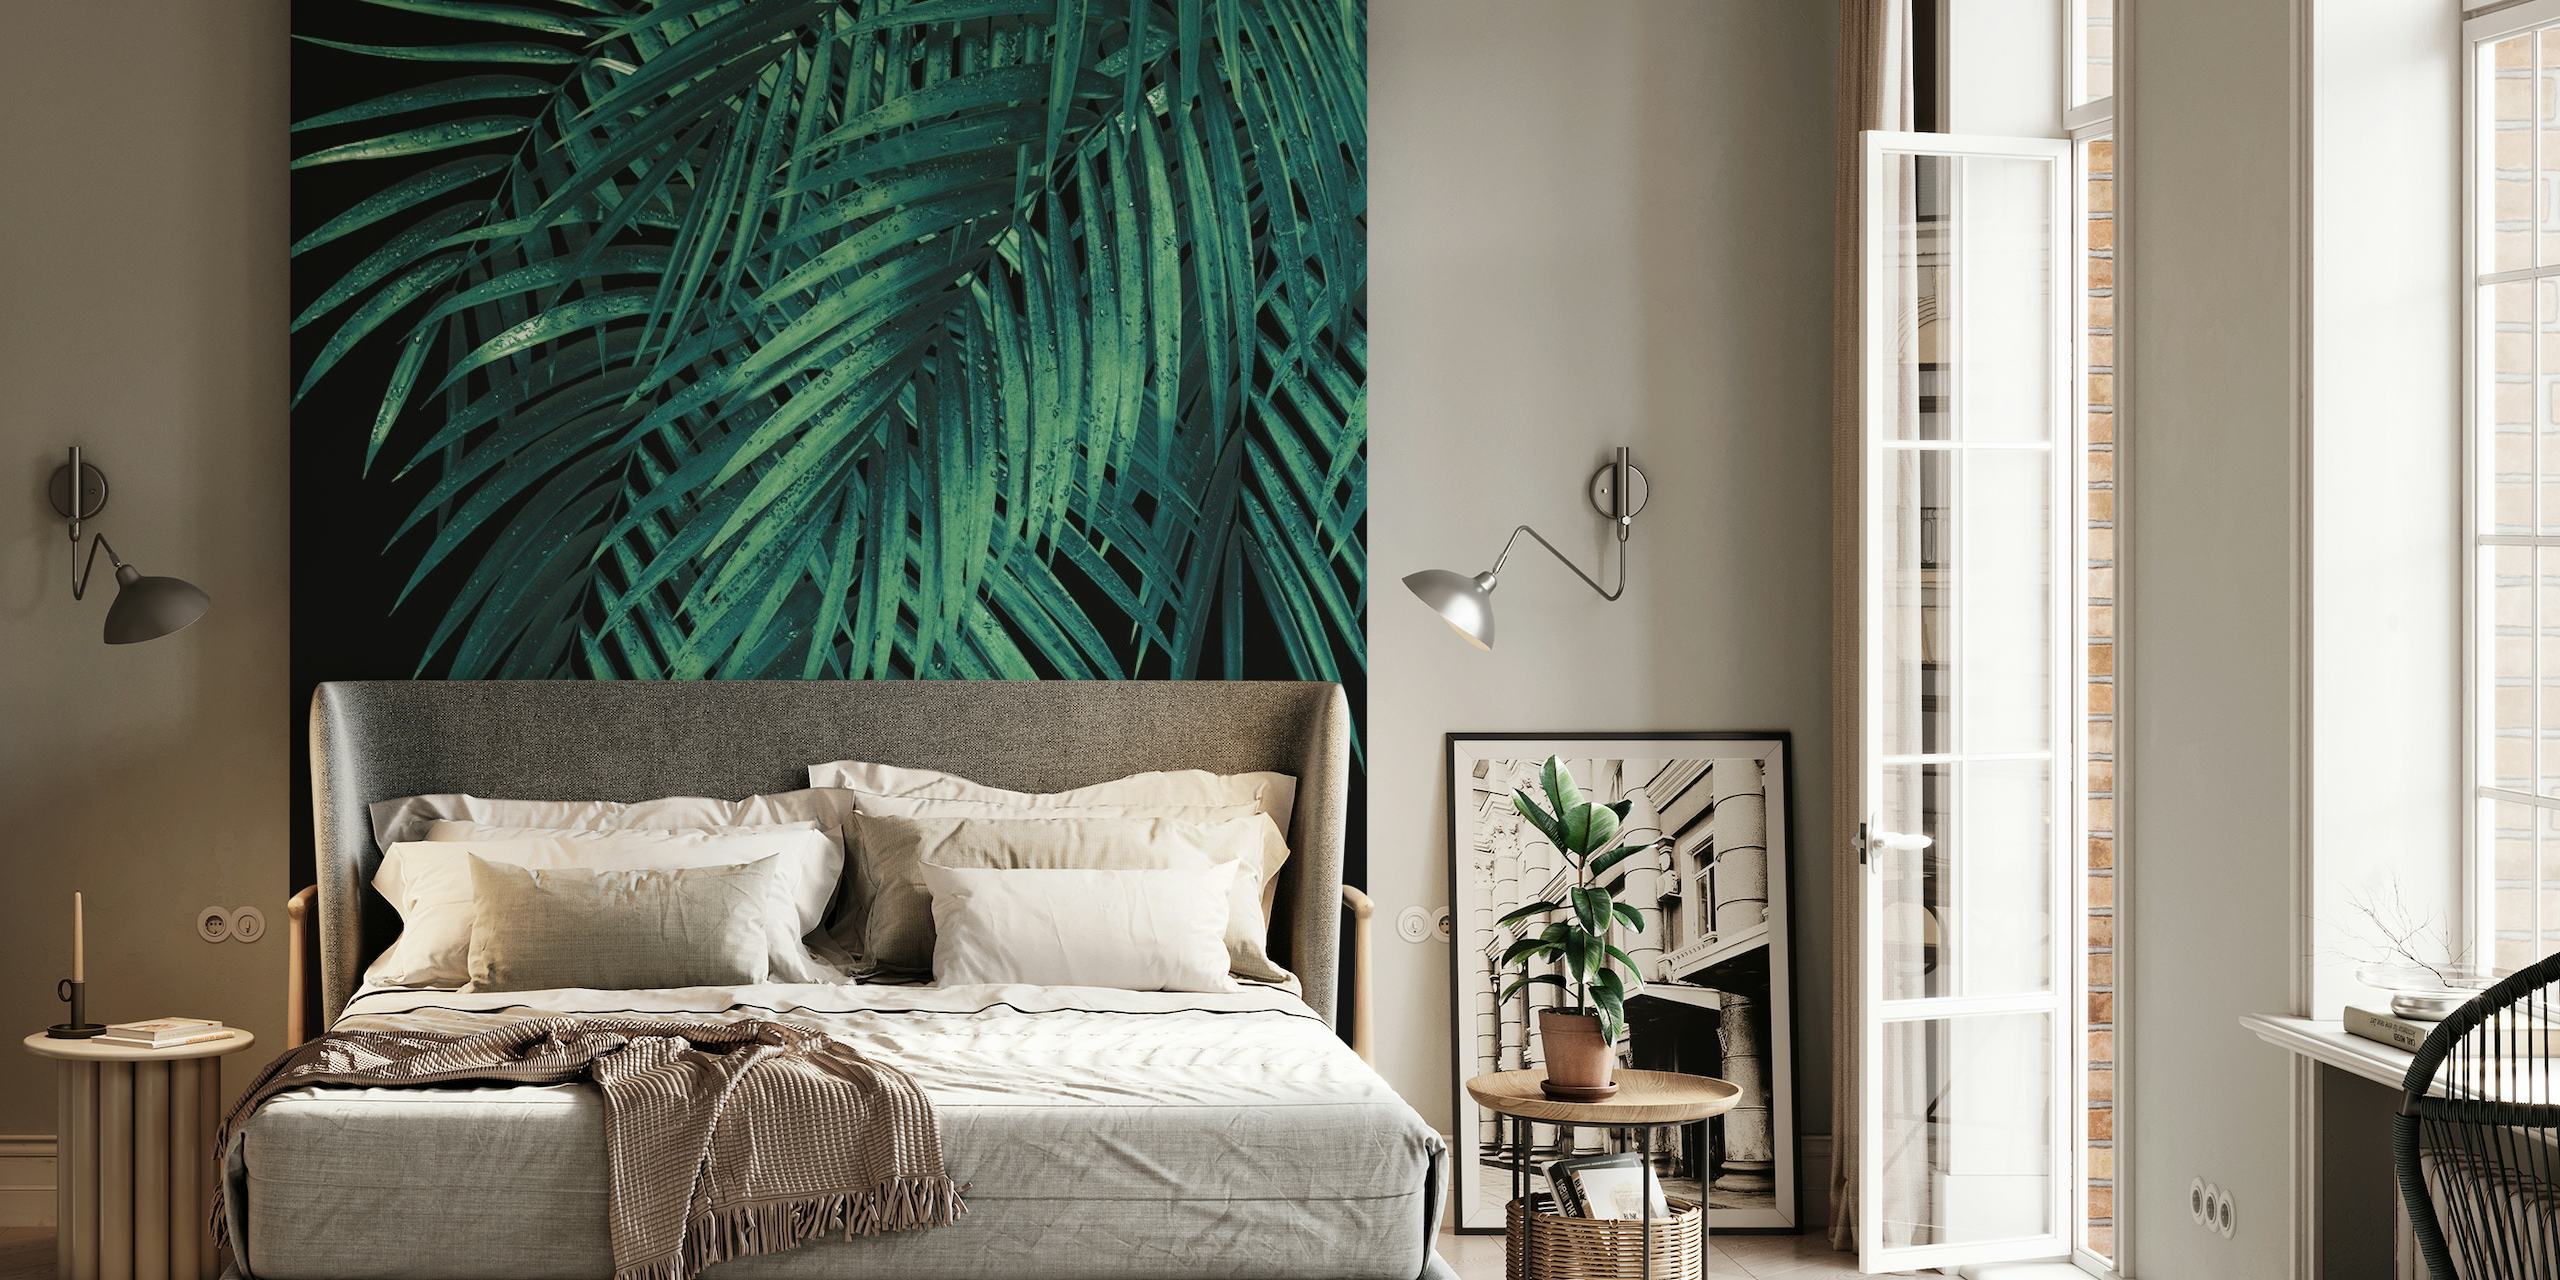 Groene palmbladeren tegen een donkere nachtelijke muurschildering op de achtergrond